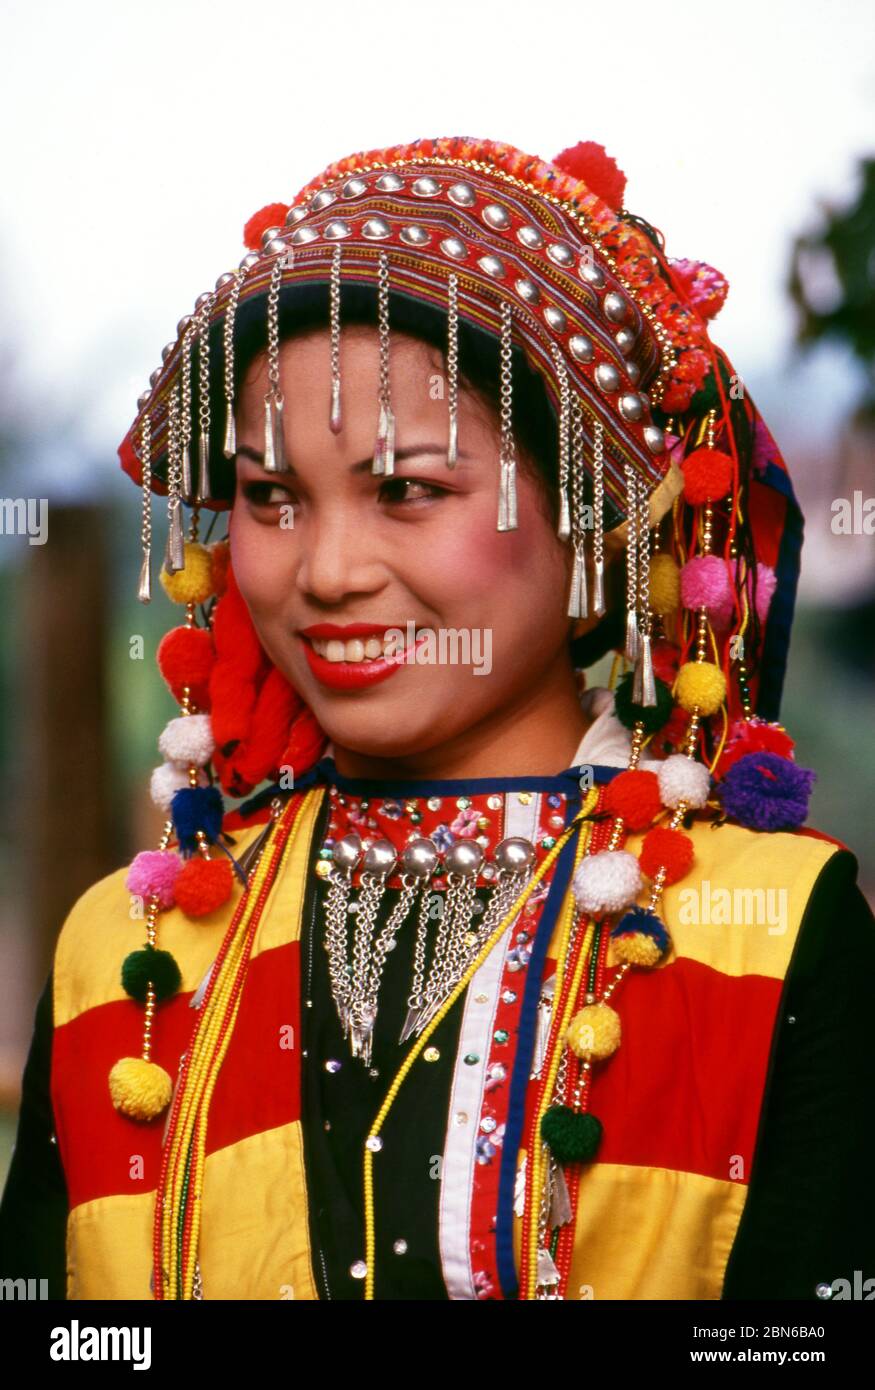 Burma / Myanmar: Lisu woman in traditional costume, Manhkring, Myitkyina, Kachin State.  The Lisu people (Lìsù zú) are a Tibeto-Burman ethnic group wh Stock Photo